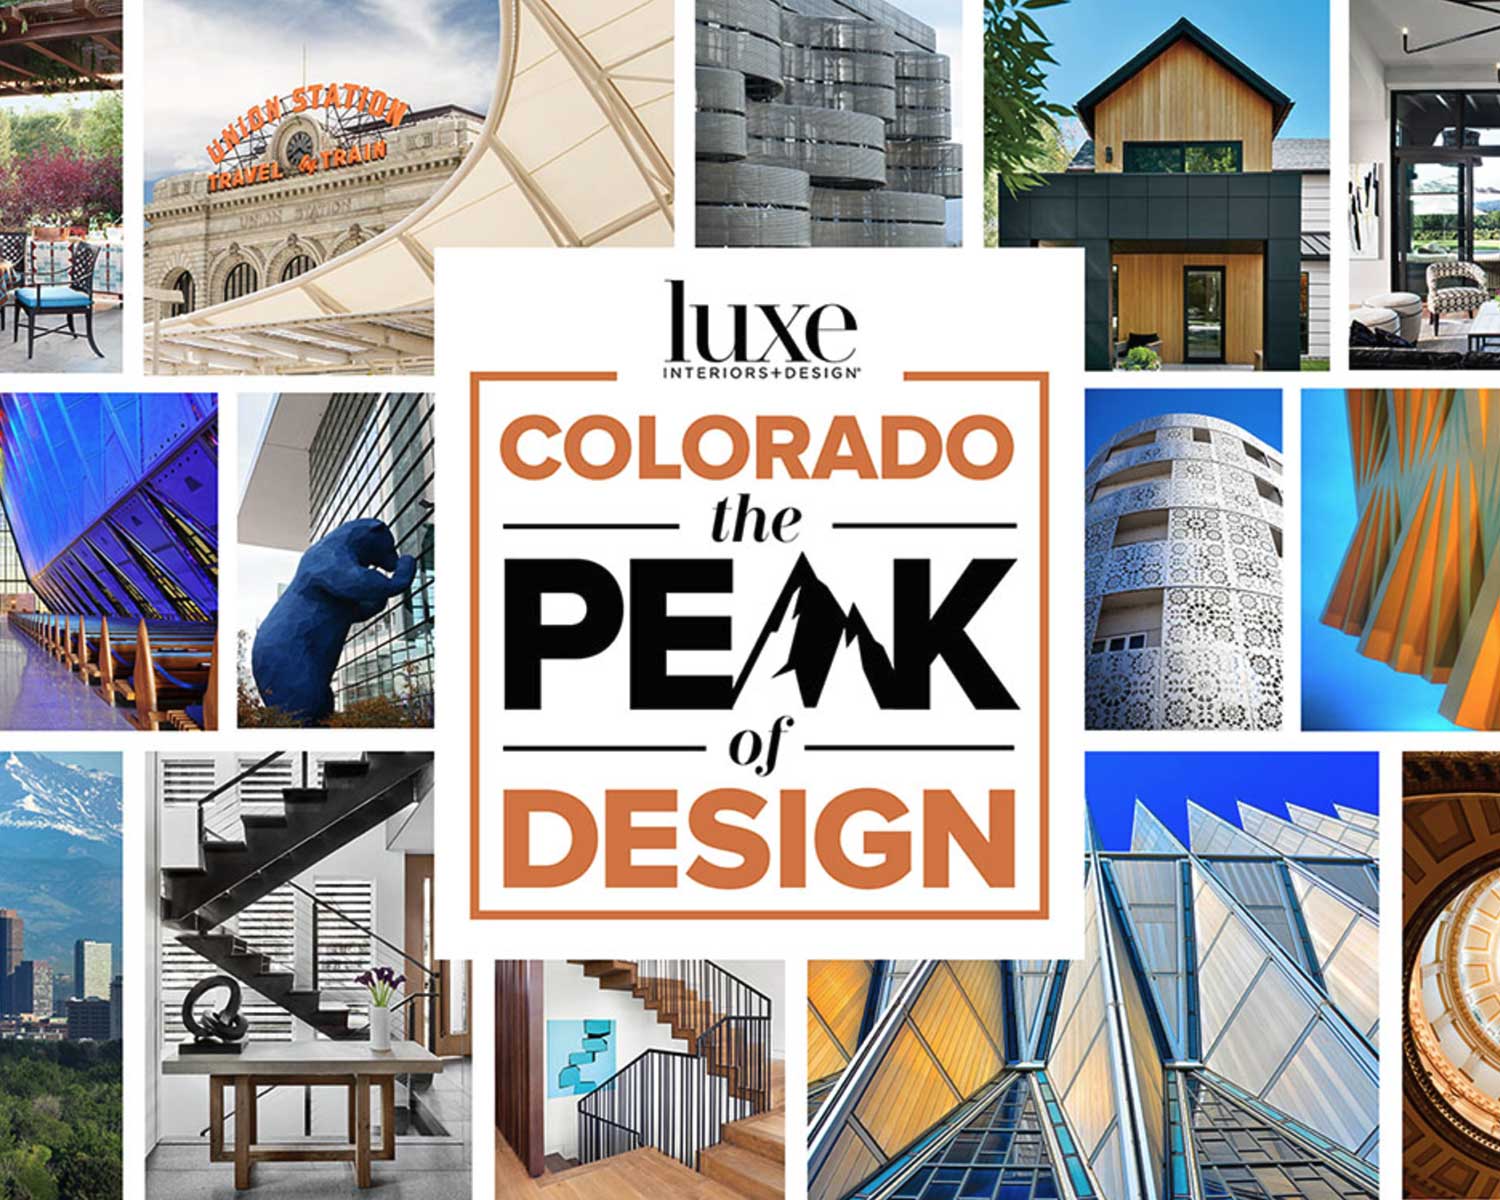 Luxe Interiors + Design Colorado: The Peak of Design